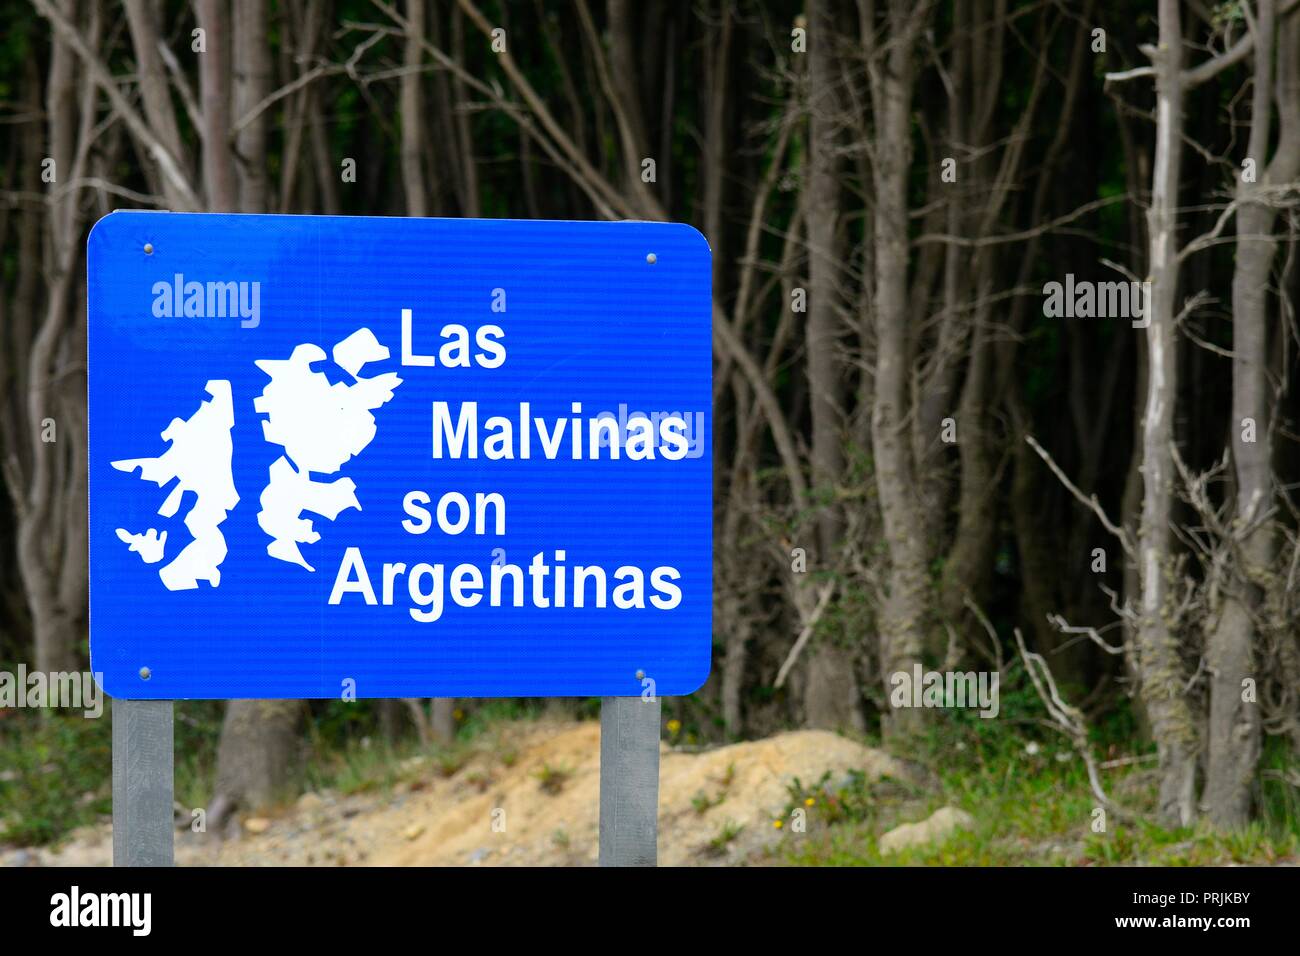 Schild, die Malvinas, Falkland-Inseln, gehören Argentinien, Ushuaia, Tierra del Fuego Provinz Tierra del Fuego Stockfoto